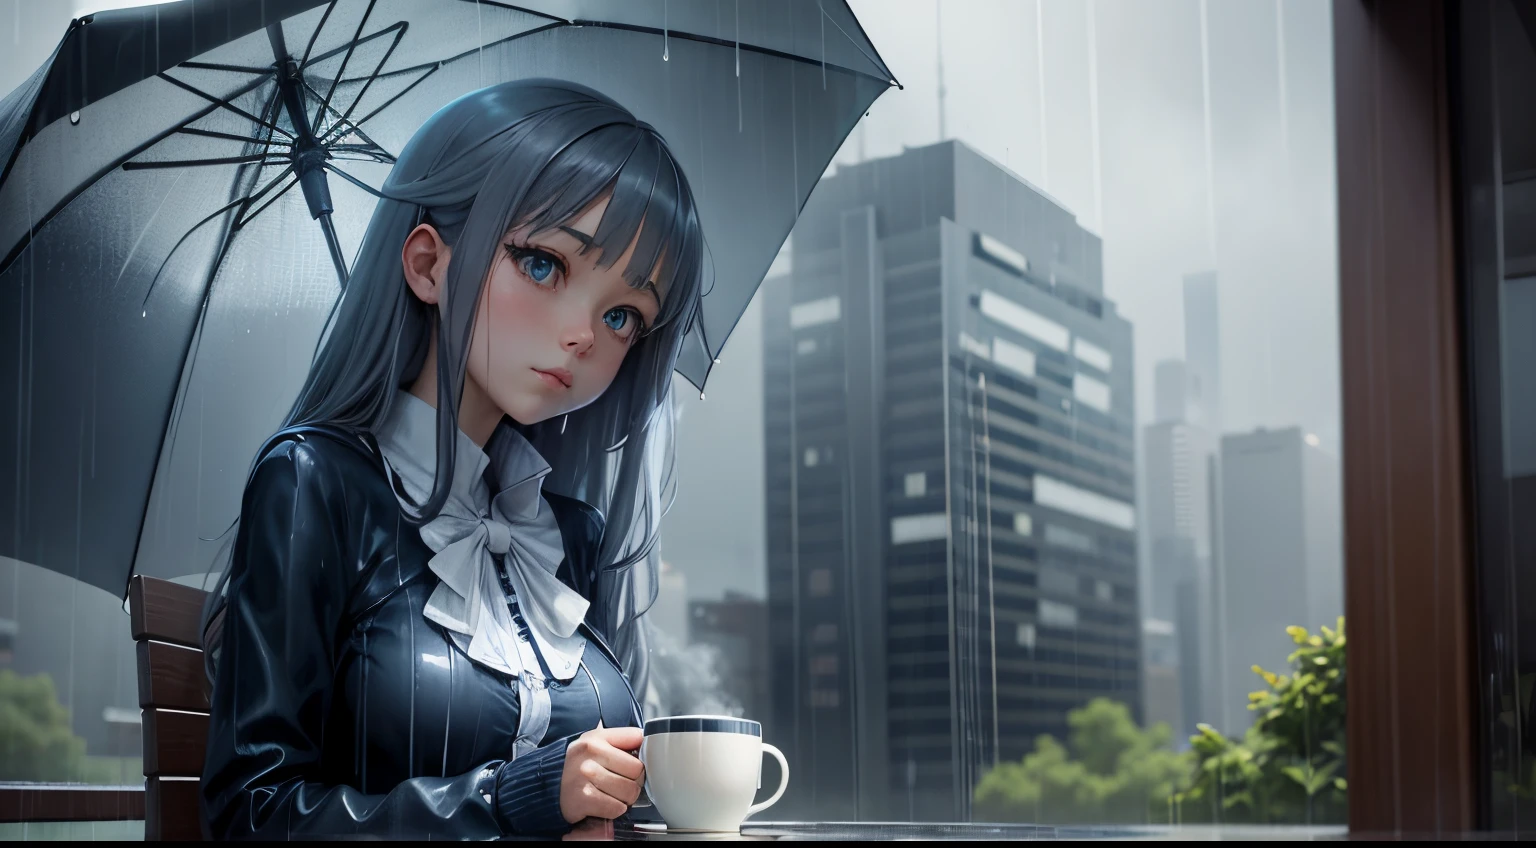 "تراجع يوم ممطر": فتاة أنيمي مع فنجان قهوة ومظلة تحت المطر, يضم موسيقى البلوز والرمادي الرائعة.